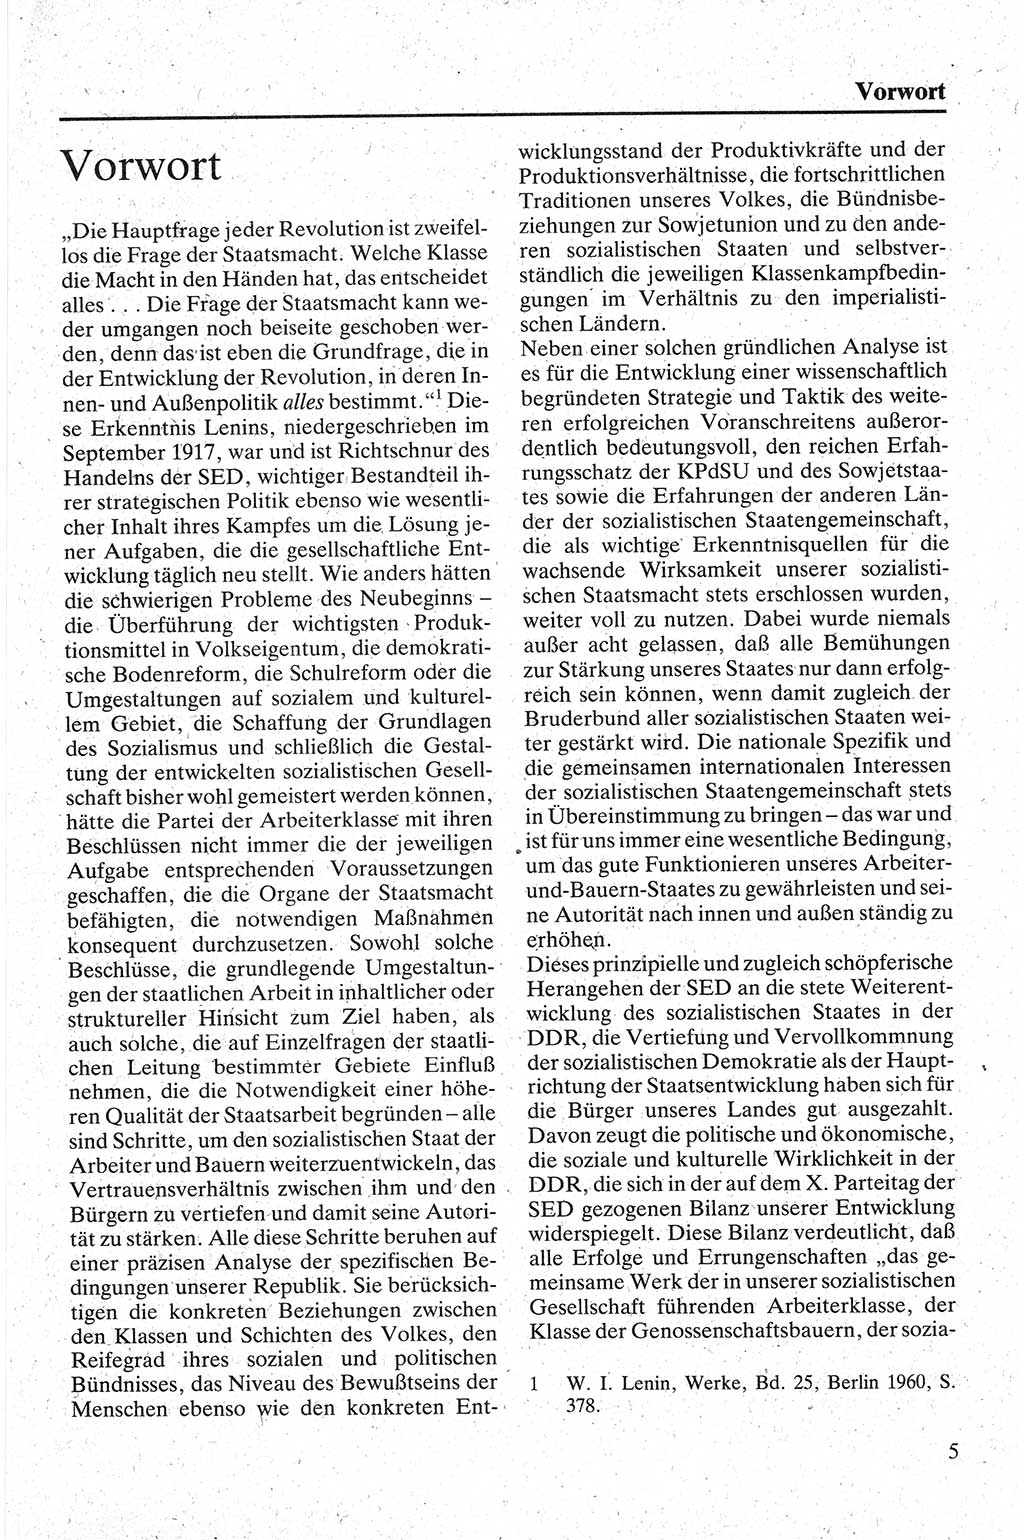 Handbuch für den Abgeordneten [Deutsche Demokratische Republik (DDR)] 1984, Seite 5 (Hb. Abg. DDR 1984, S. 5)